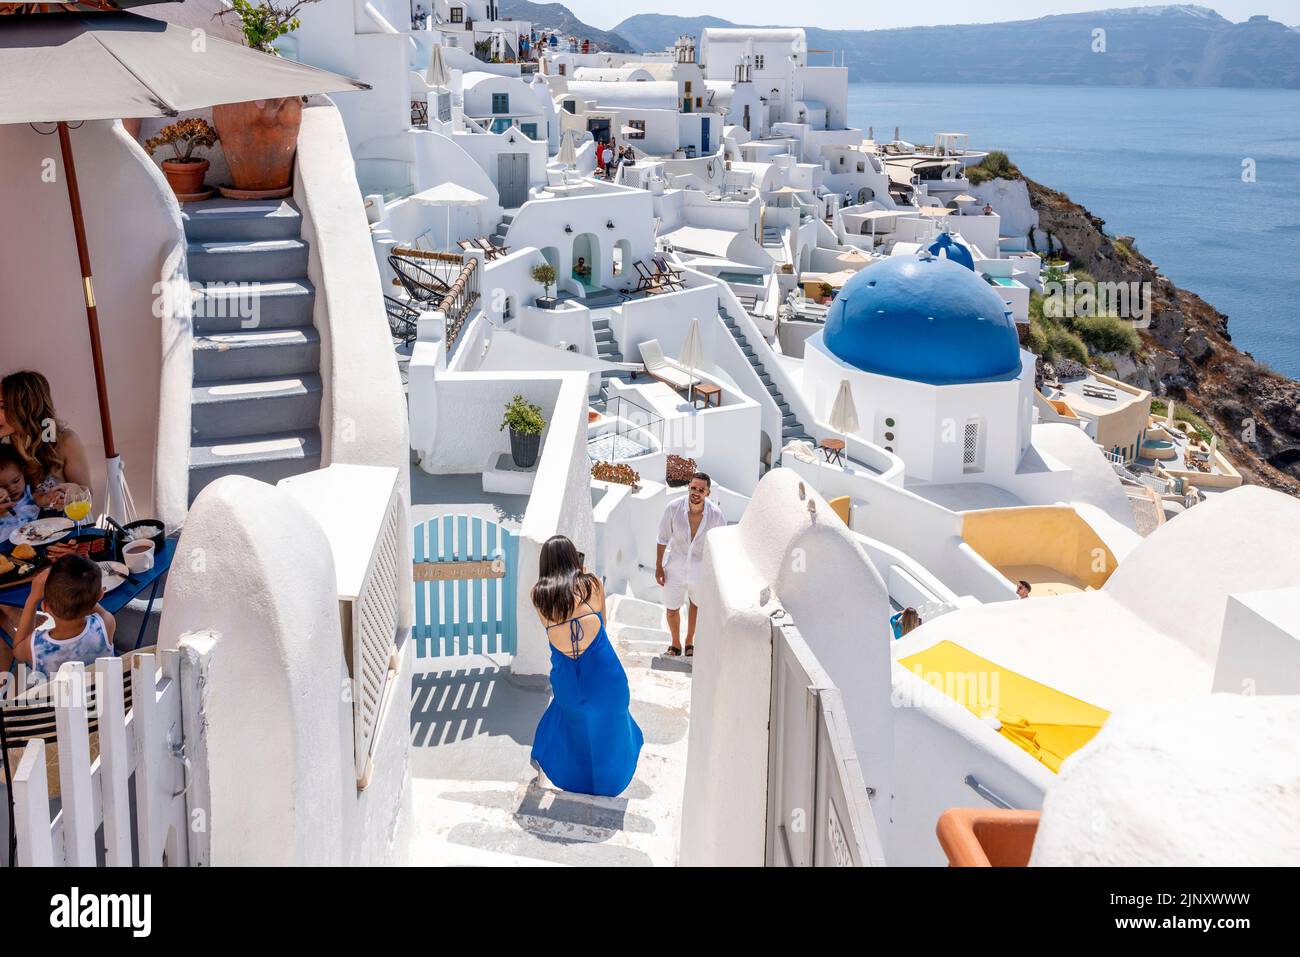 Jeunes posant pour des photos à Un point de vue classique dans la ville d'Oia, Santorin, les îles grecques, la Grèce. Banque D'Images